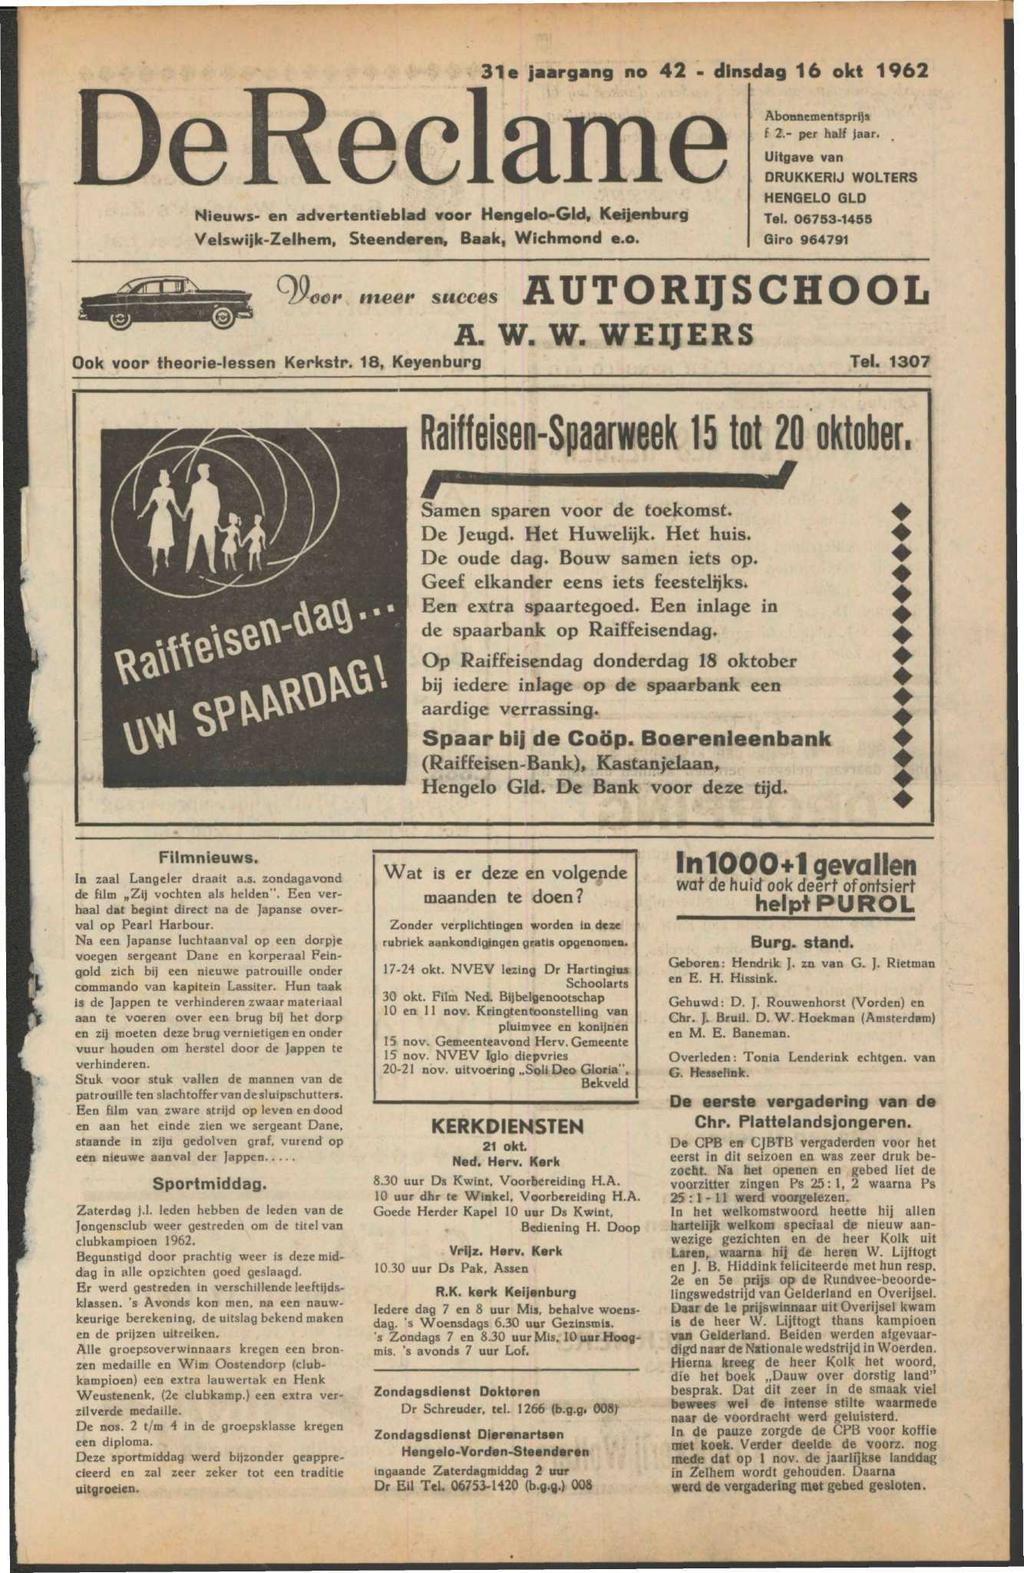 De Reclame Nieuws- en advertentieblad voor Hcngelo-Gld, Keijenburg Velswijk-Zelhem, Steenderen, Baak, Wichmond e.o. 31e jaargang no 42 - dinsdag 16 okt 1962 Abonnementsprijs f 2.- per half jaar.